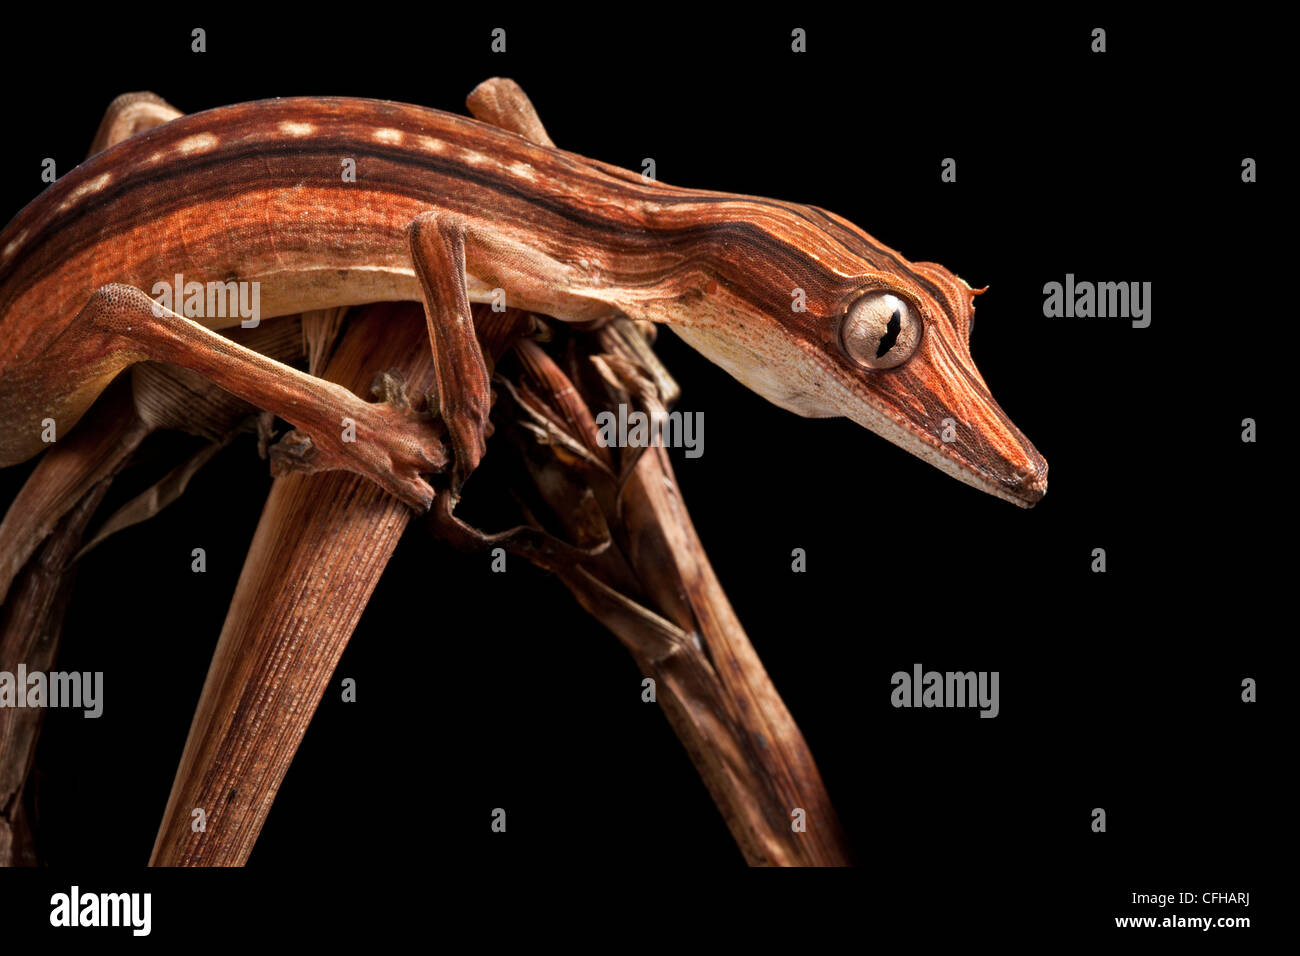 Gecko à queue de feuille bordée montrant plus sombre, nocturanal entre les feuilles de palmiers morts camouflés, Madagascar Banque D'Images